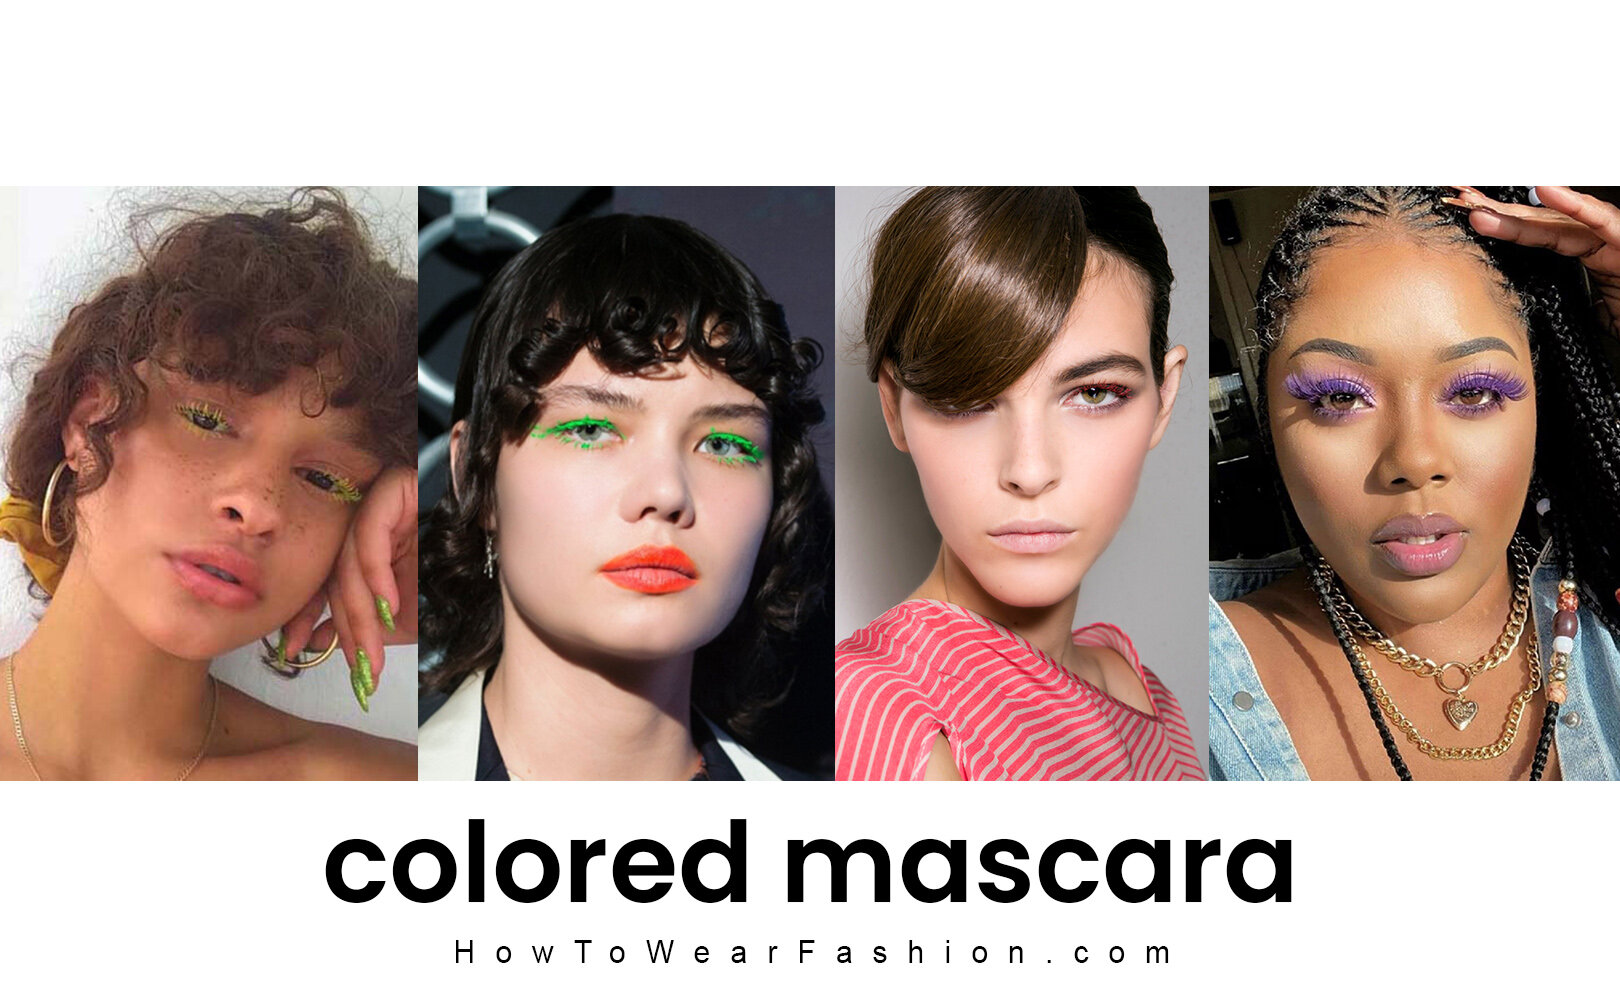 Colored mascara  HOWTOWEAR Fashion